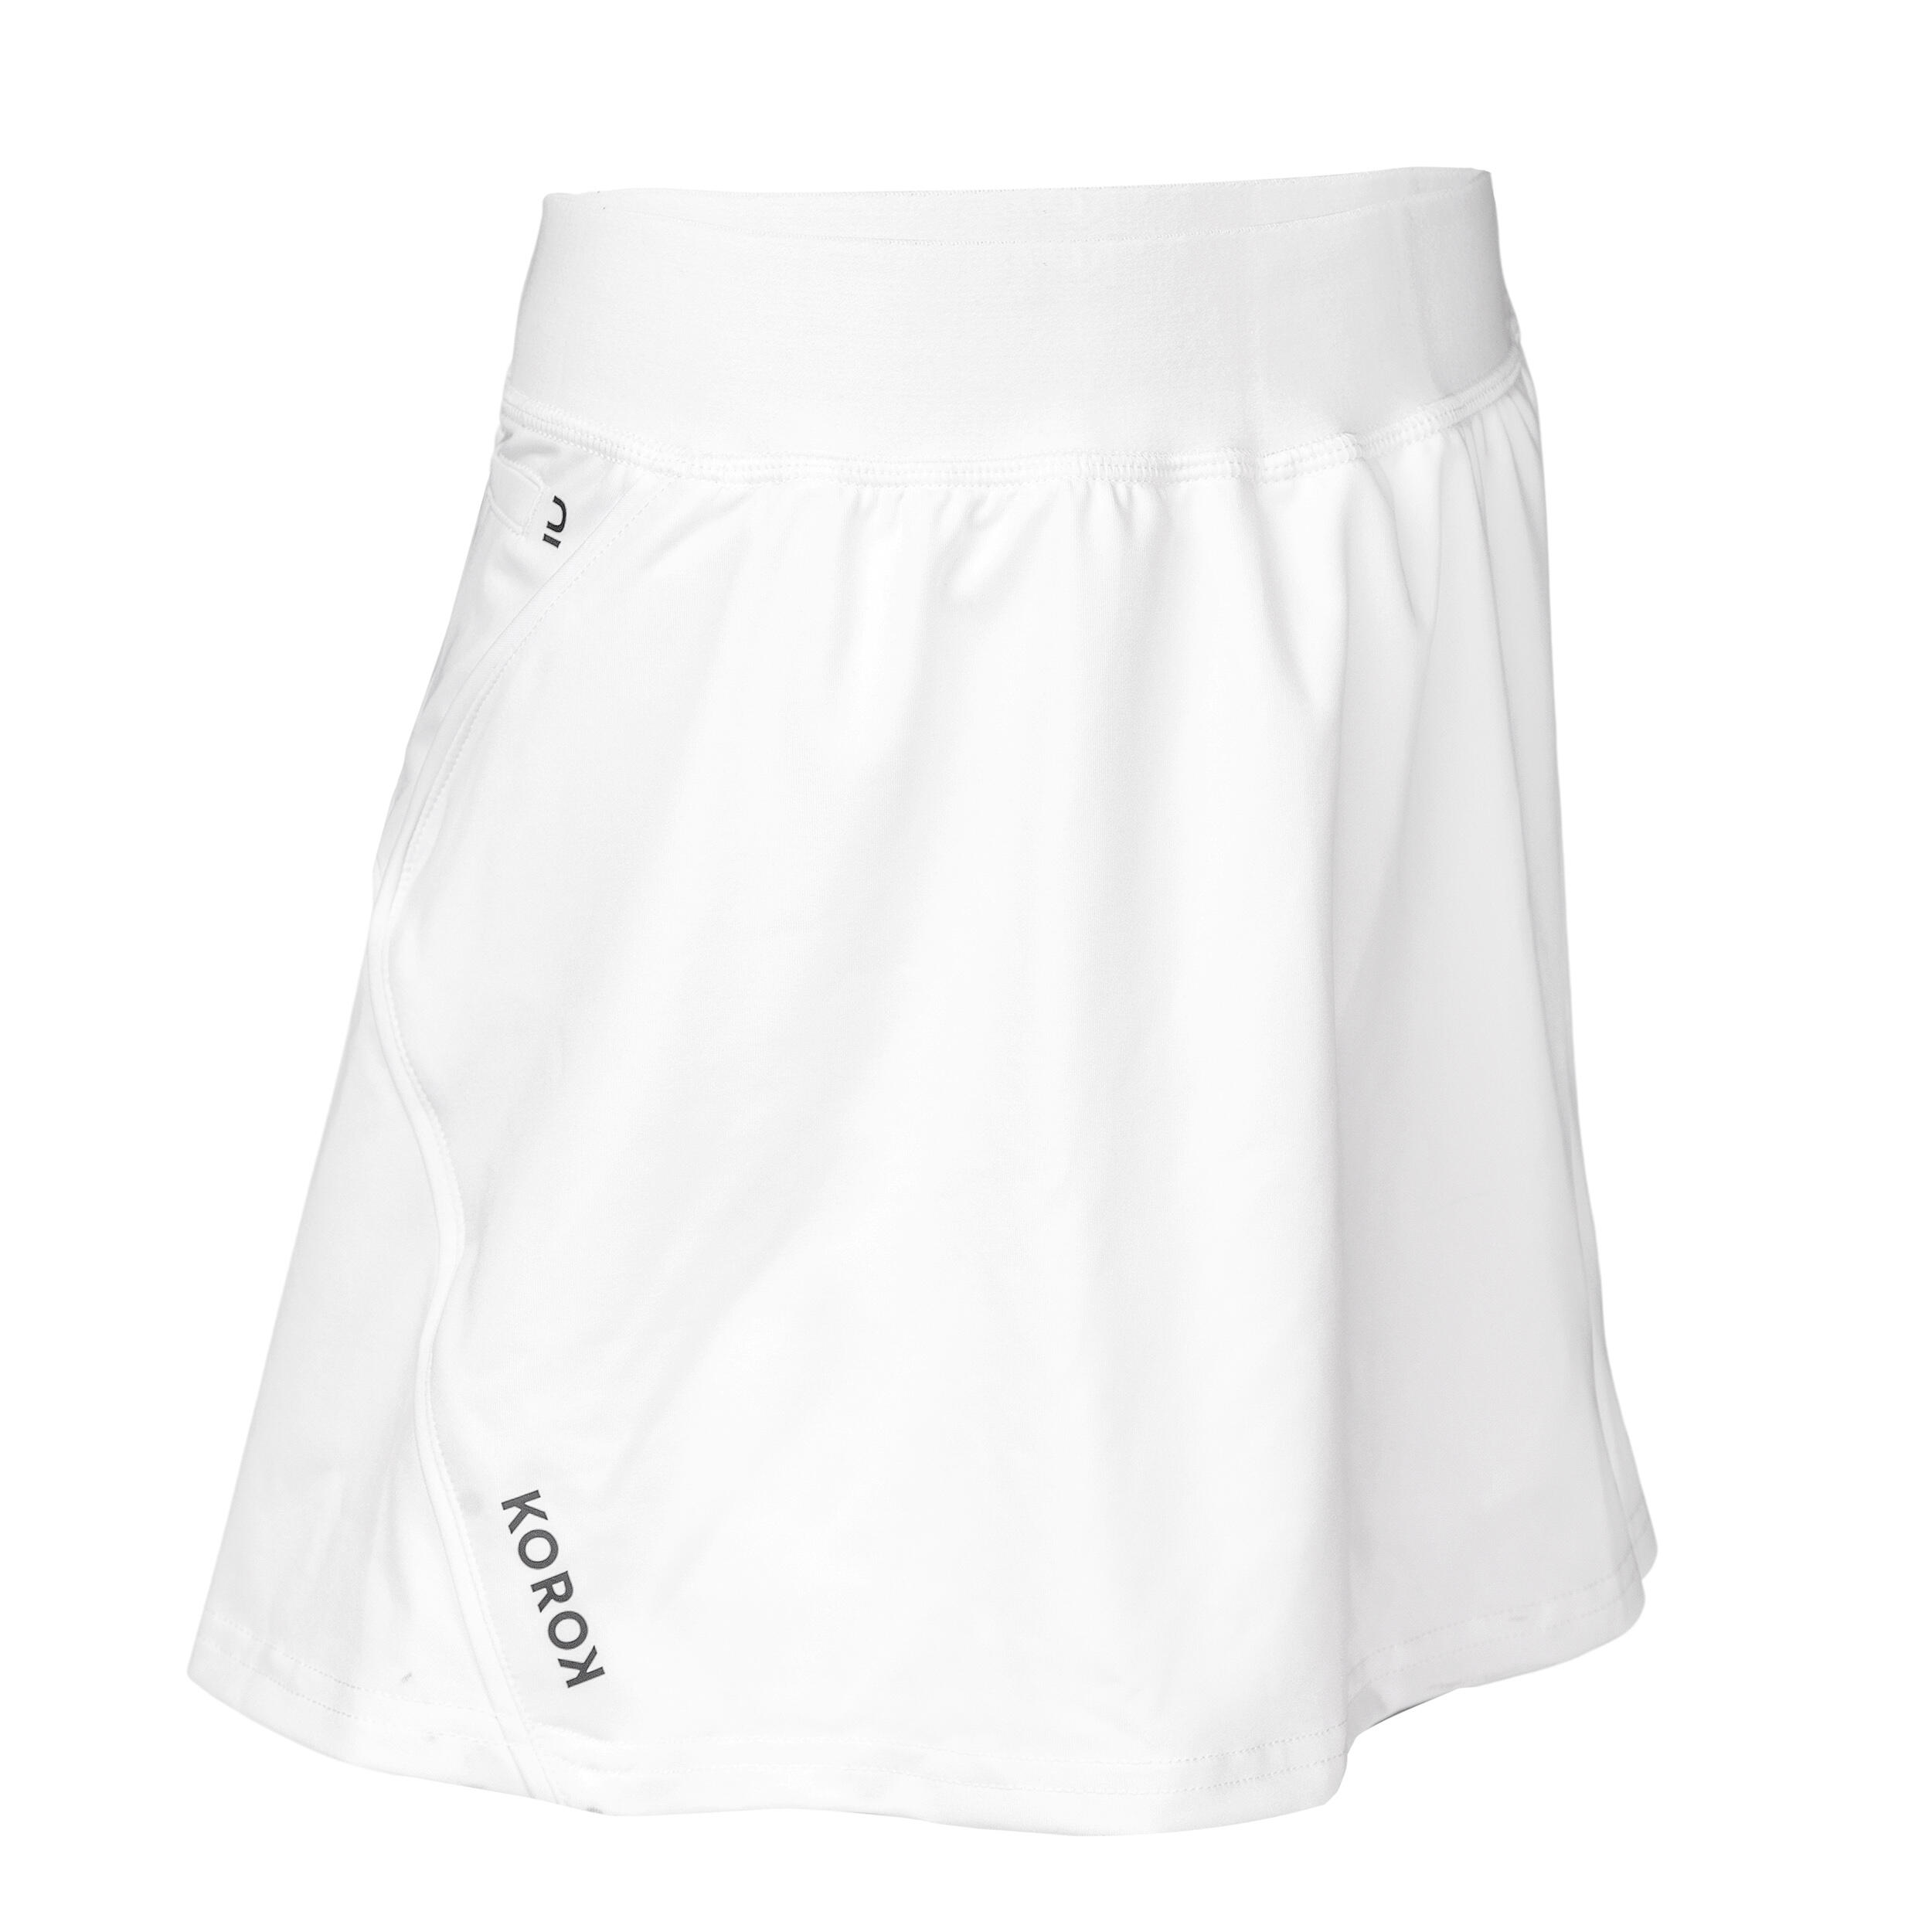 Women's High-Intensity Field Hockey Skirt FH900 - White 4/4